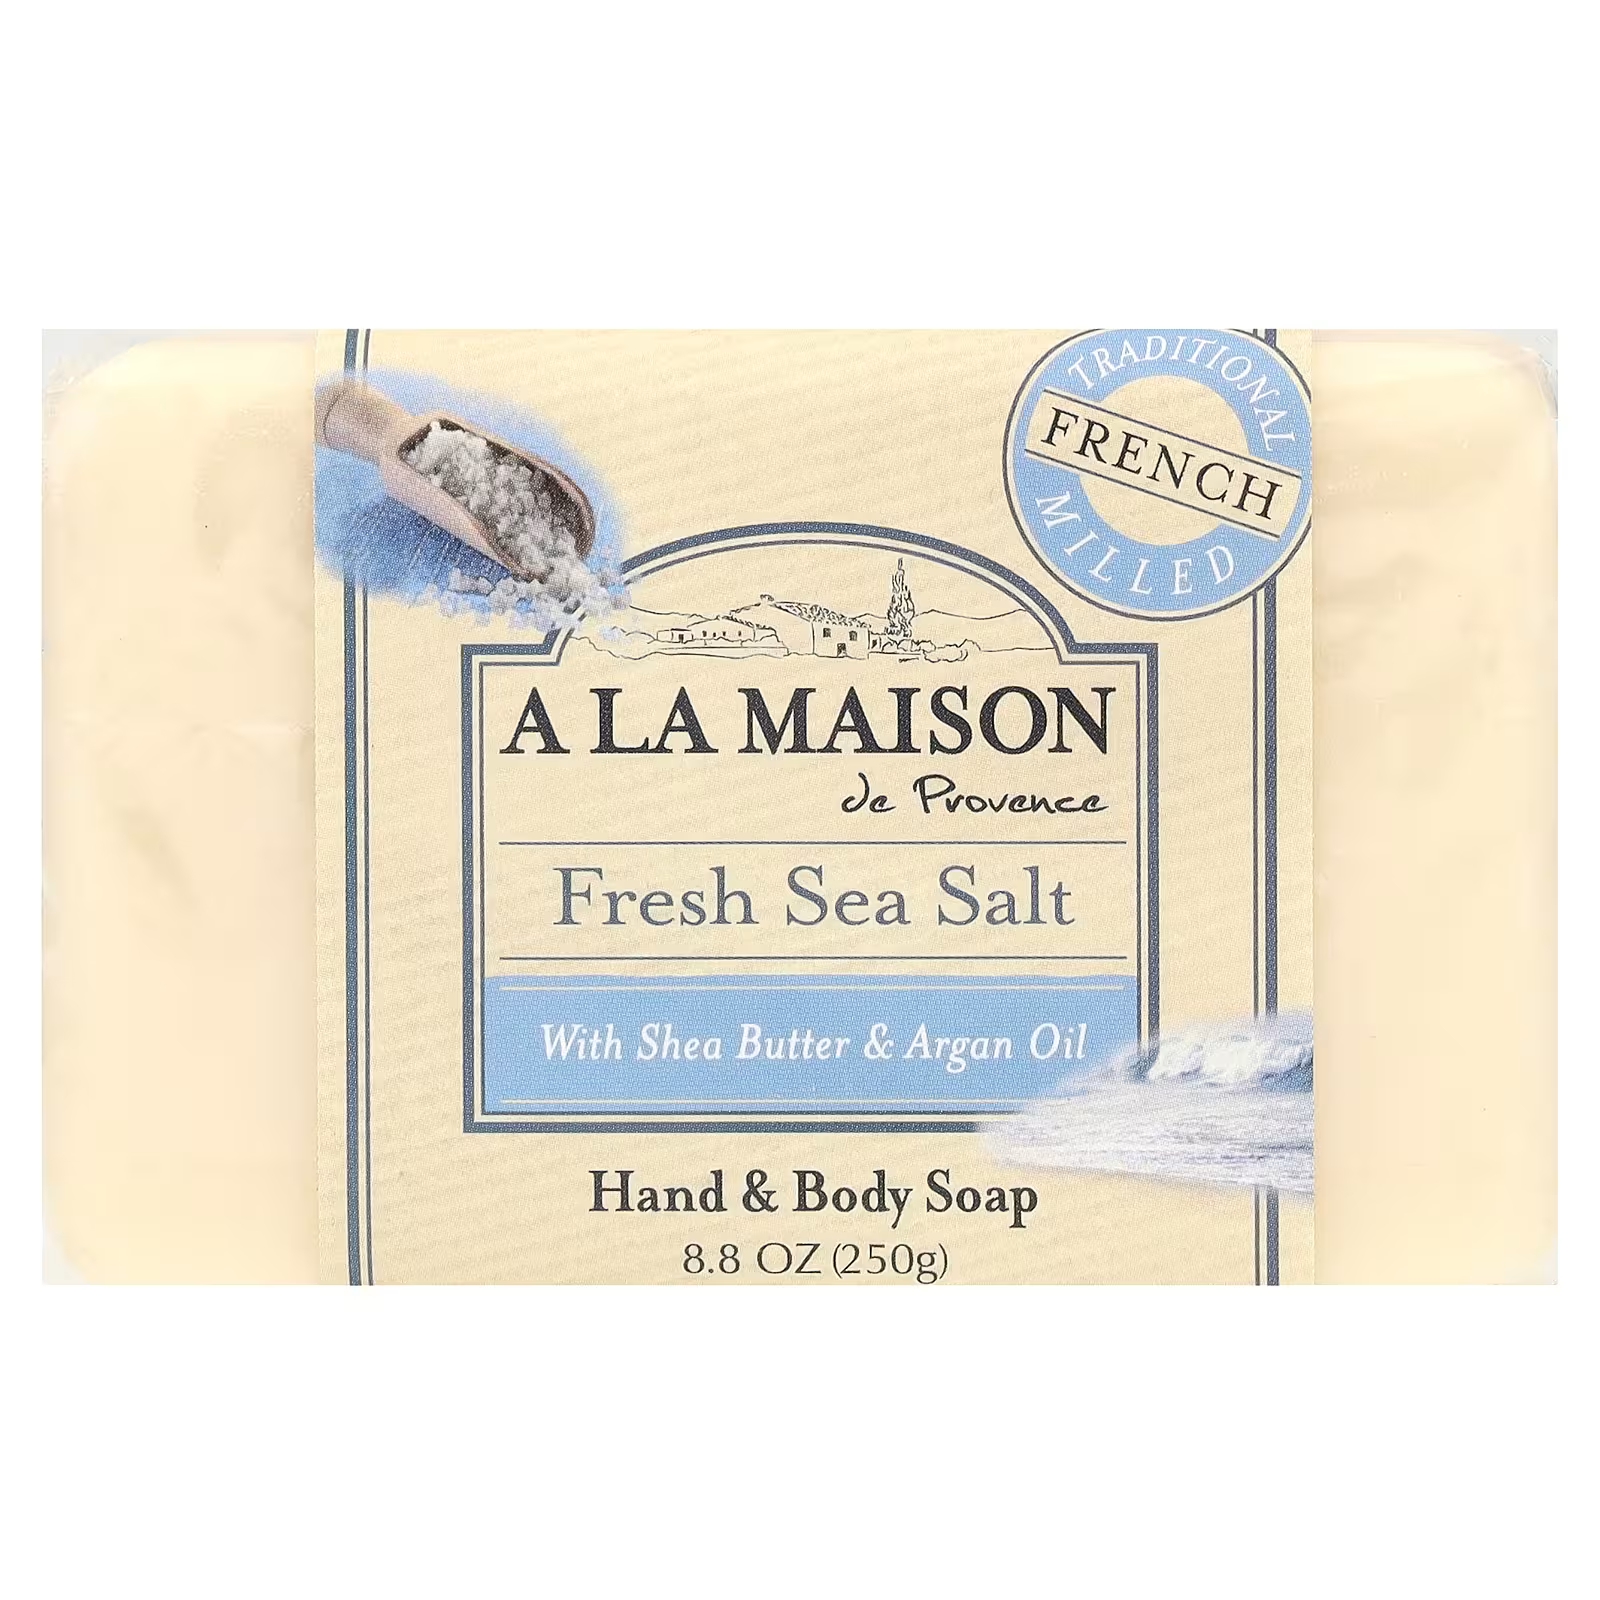 Мыло для рук и тела со свежей морской солью, 8,8 унции (250 г) A La Maison de Provence